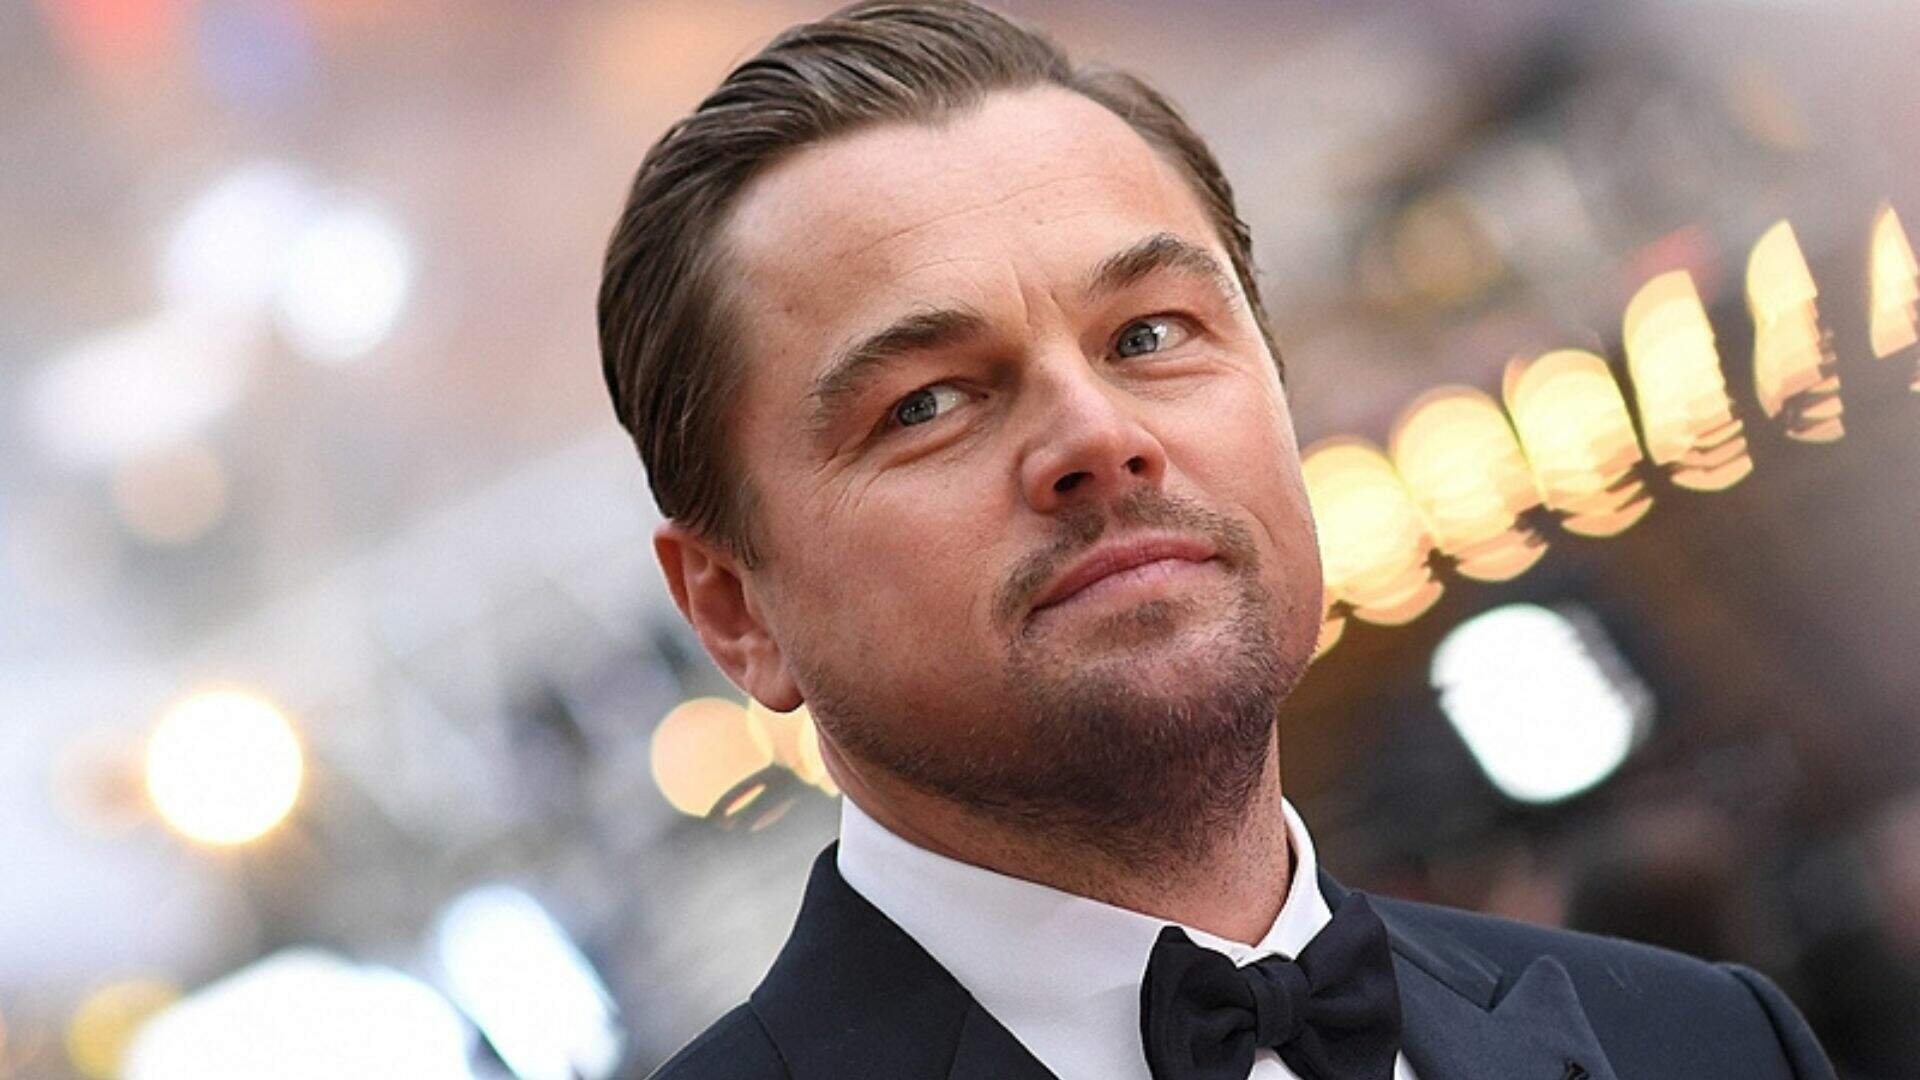 Leonardo Wilhelm DiCaprio é um ator, produtor, empresário, ambientalista e filantropo norte-americano reconhecido por sucessos como 